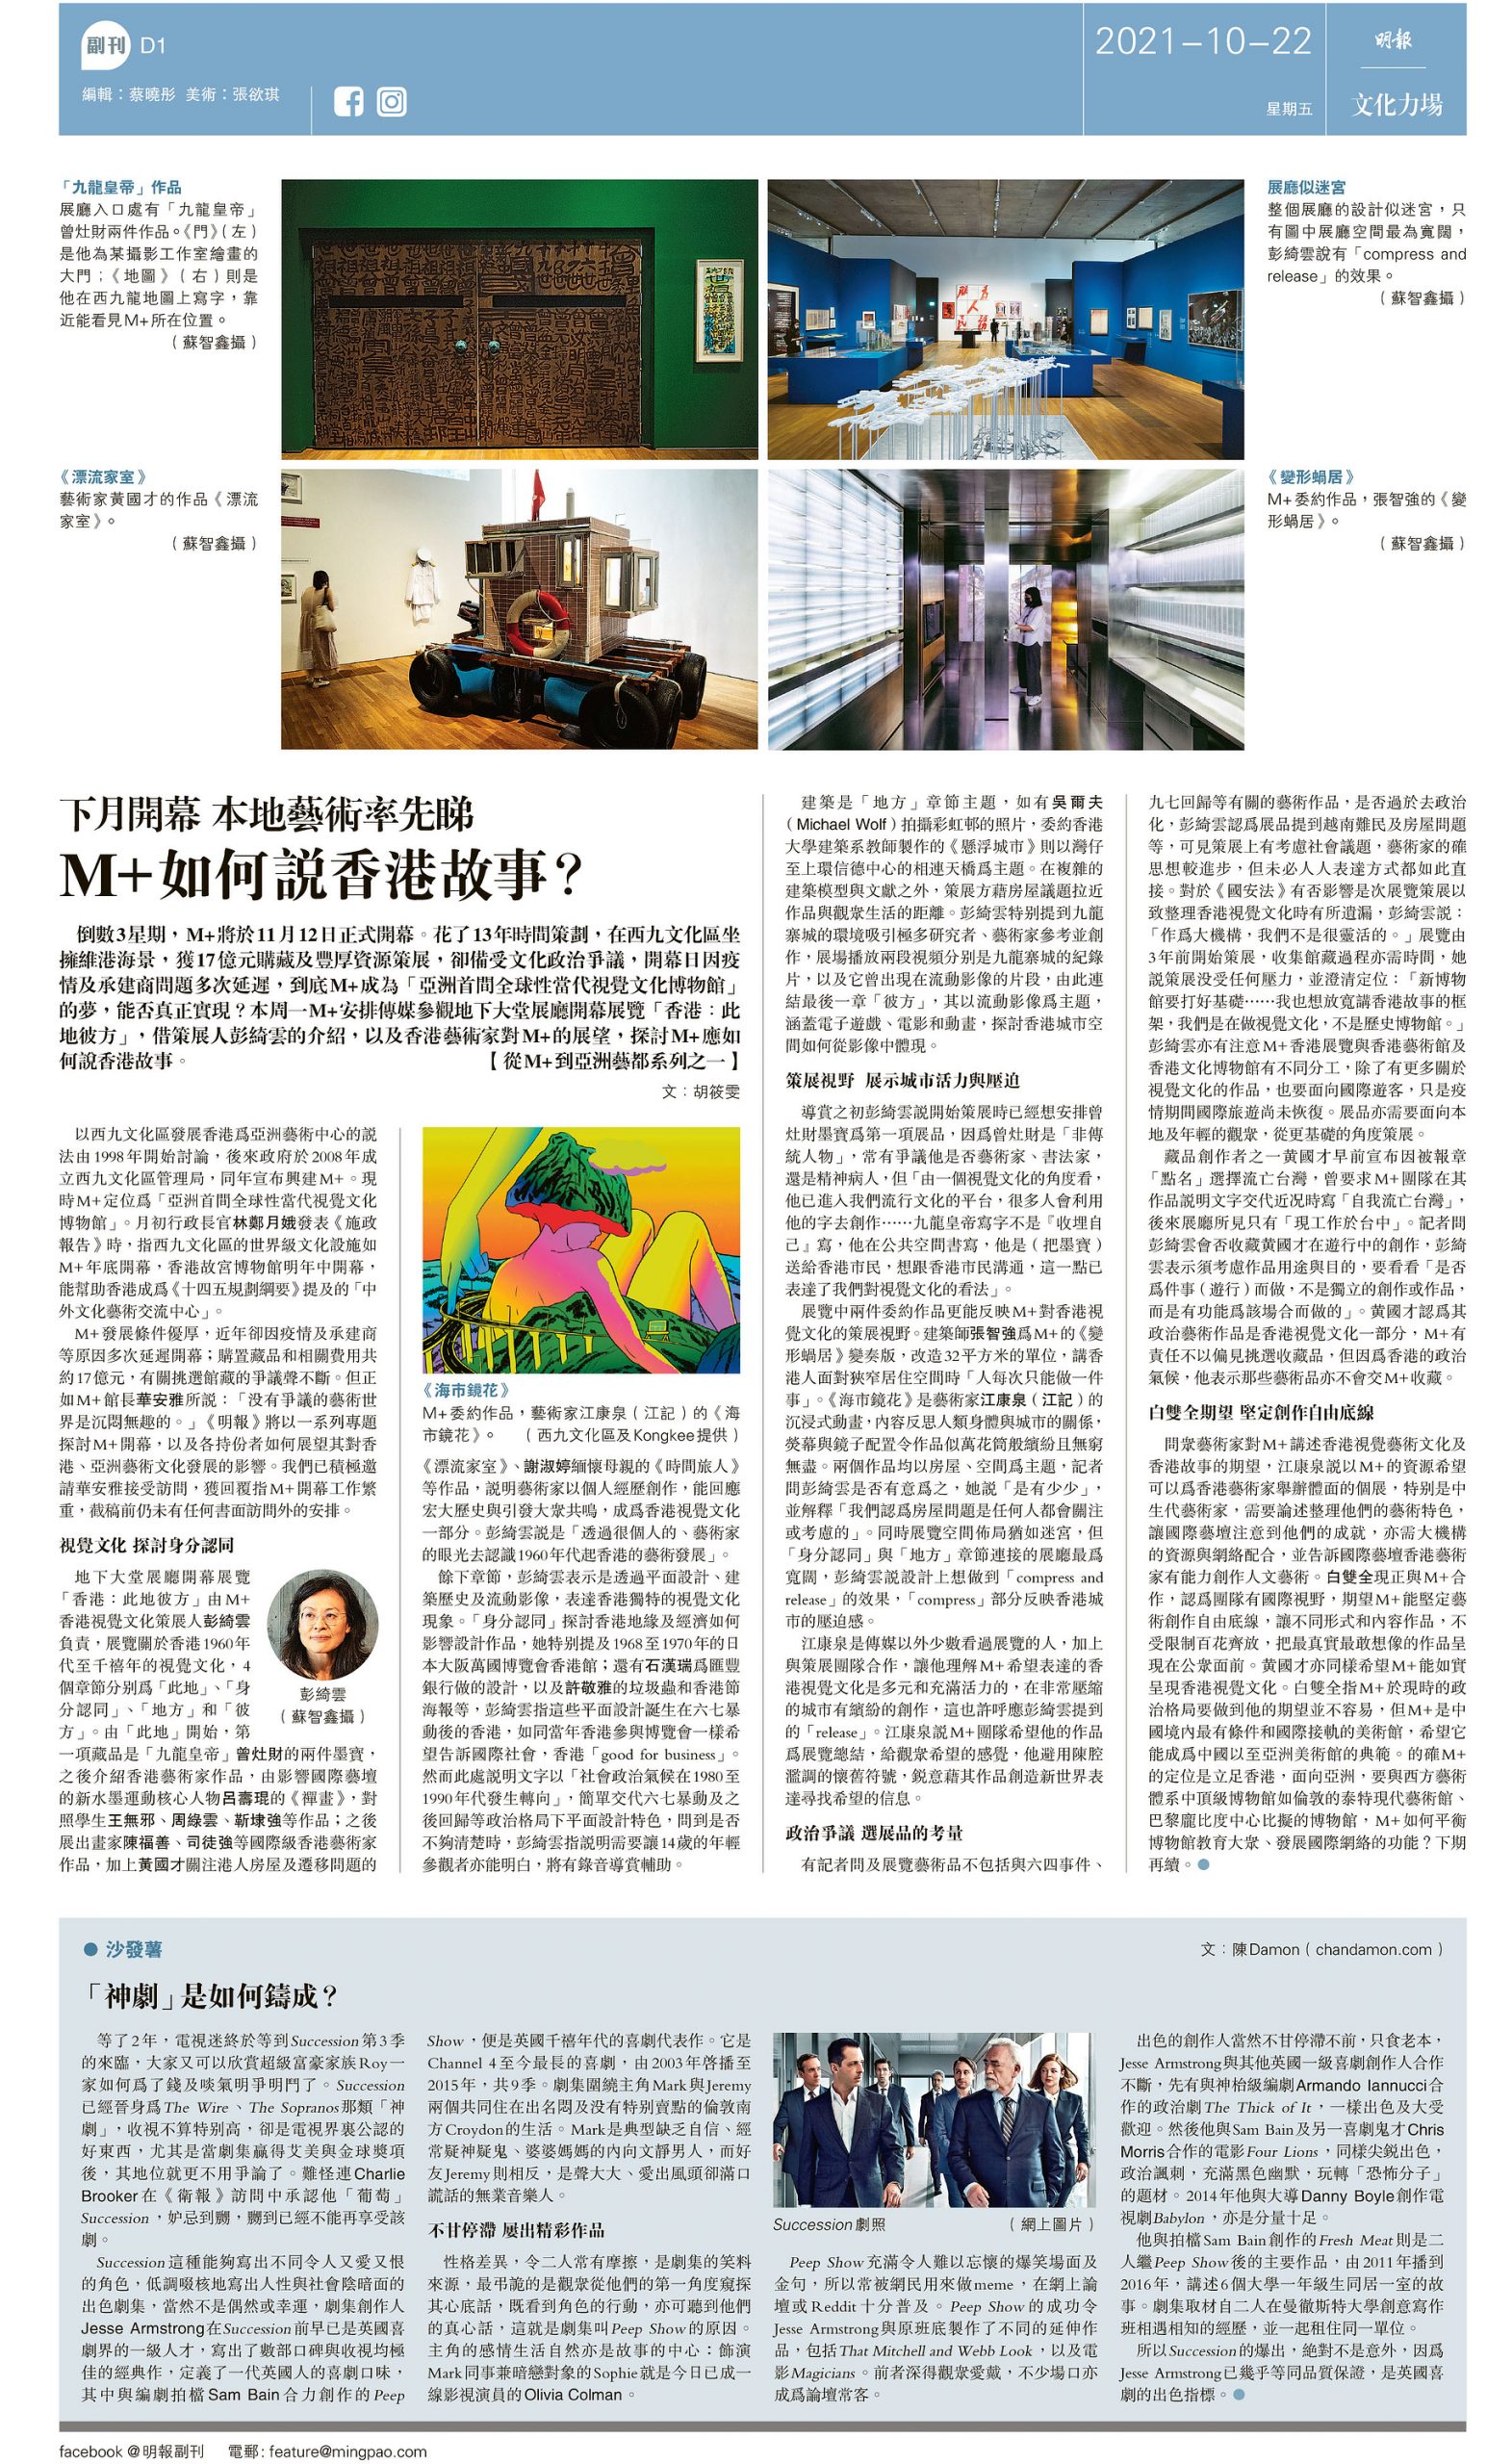 HONG KONG NEWS AWARDS 2021 – The Newspaper Society of Hong Kong 6